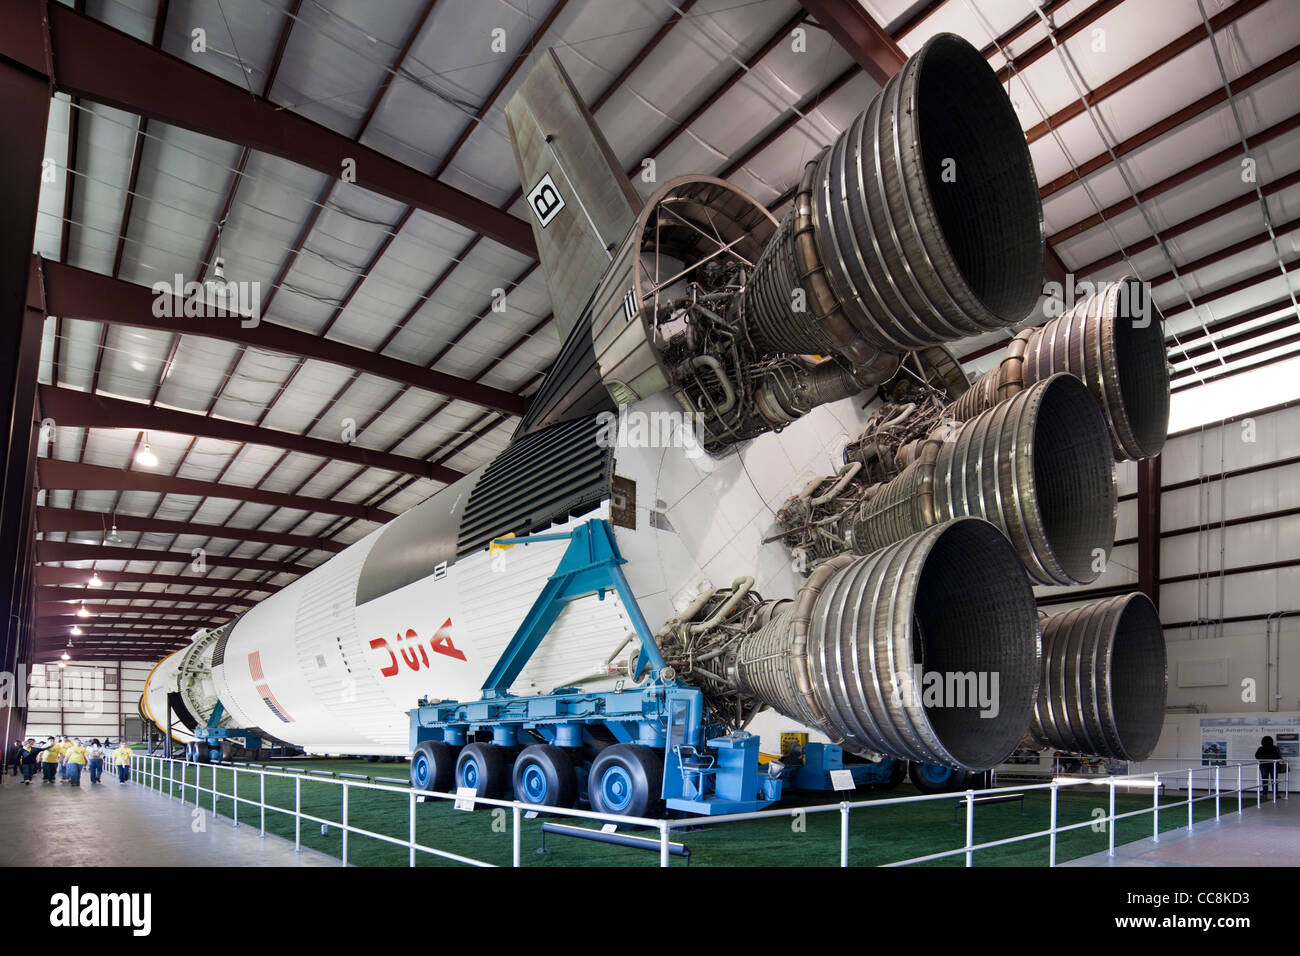 Johnson Space center, Houston, Texas Stock Photo